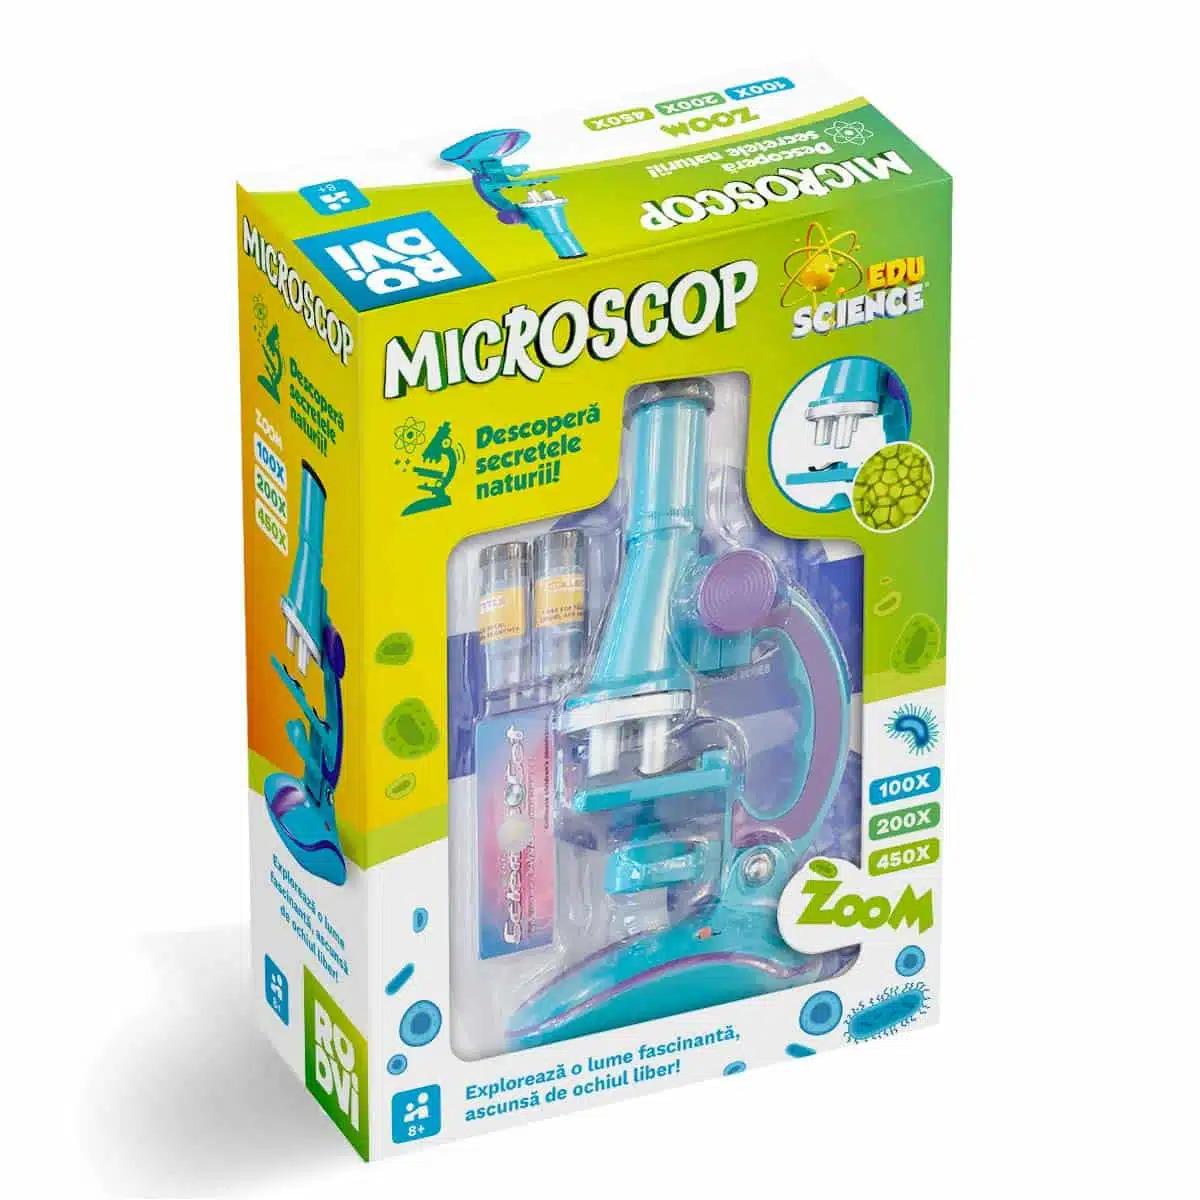  Microscop pentru copii – Joc EduScience